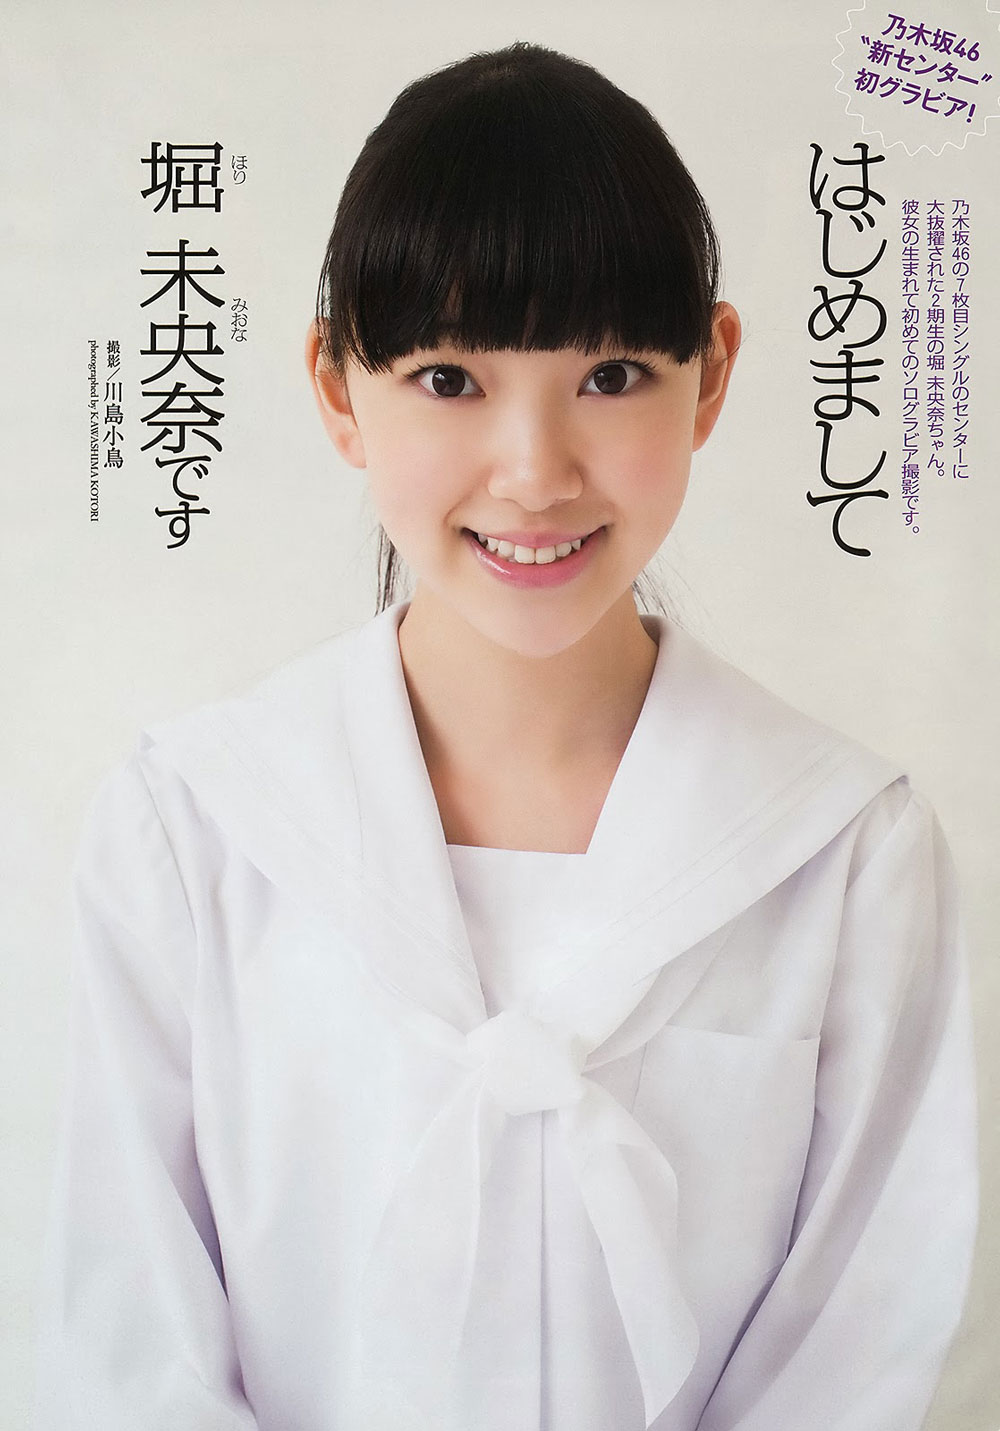 Nogizaka46 Miona Hori WPB Magazine